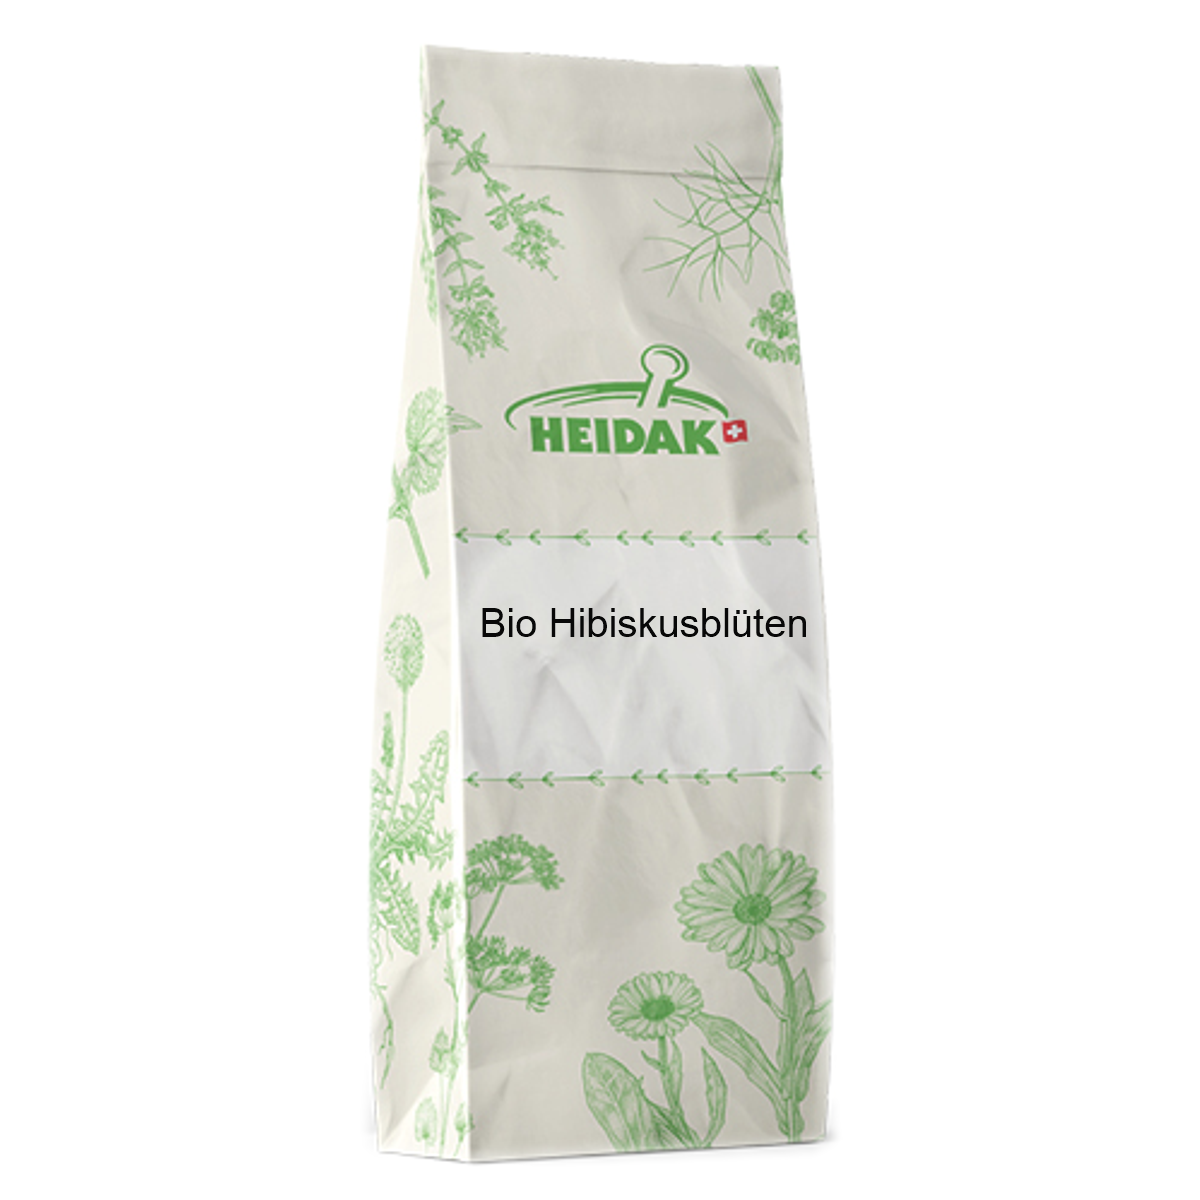 Heidak_Bio_Hibiskusblueten_online_kaufen